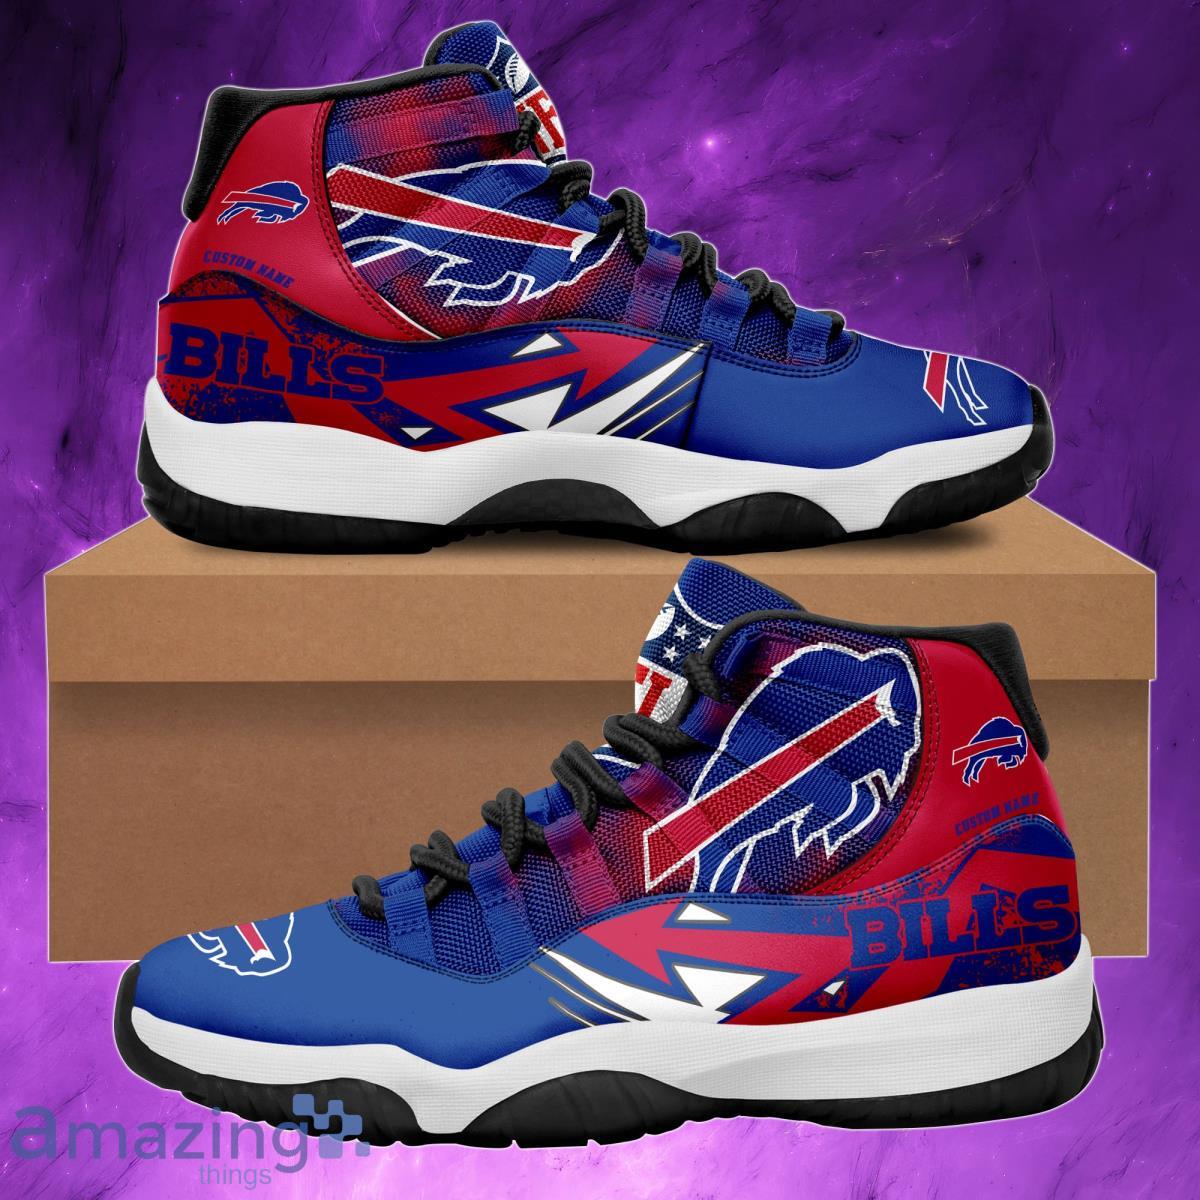 Buffalo Bills NFL Custom Name Air Jordan 11 Sneakers Shoes For